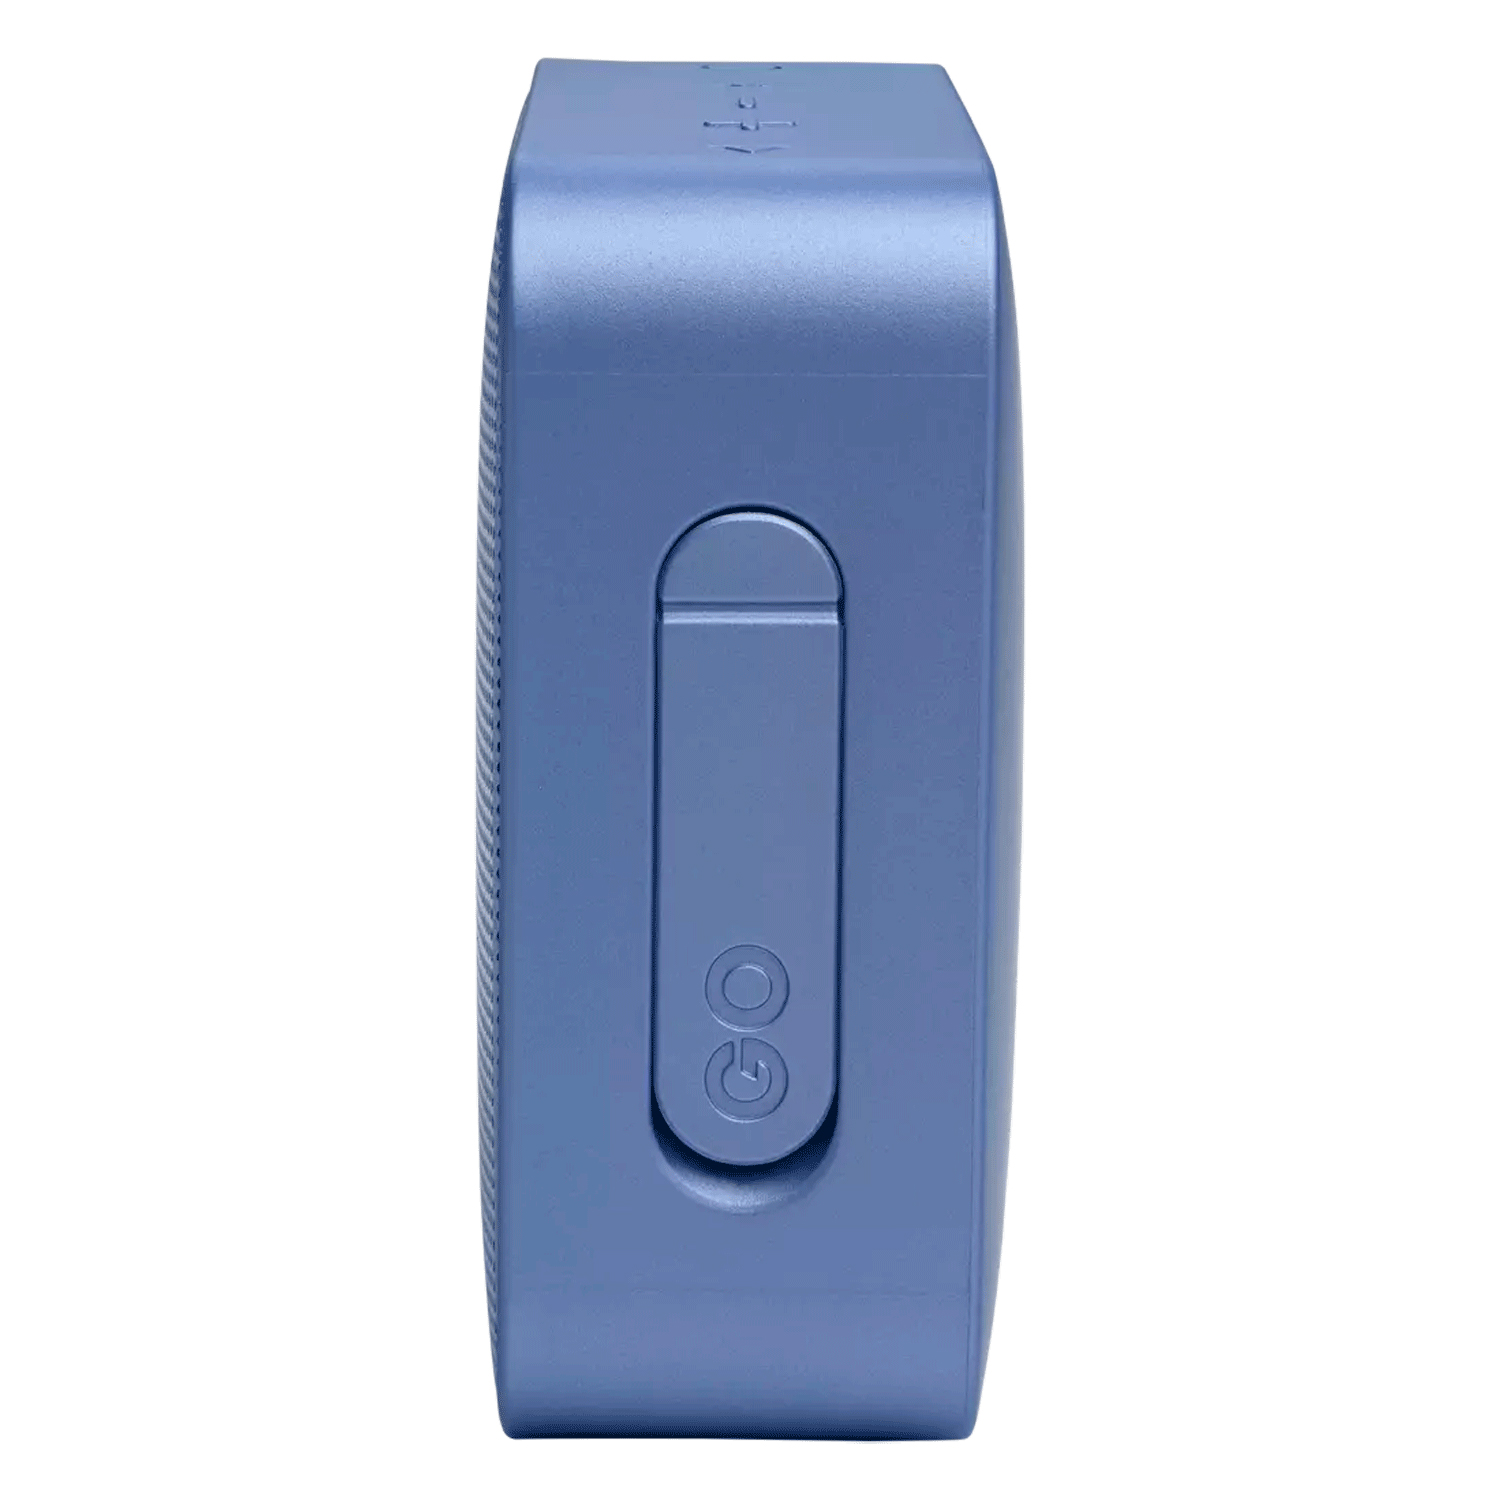 Caixa de Som JBL GO Essential - Azul